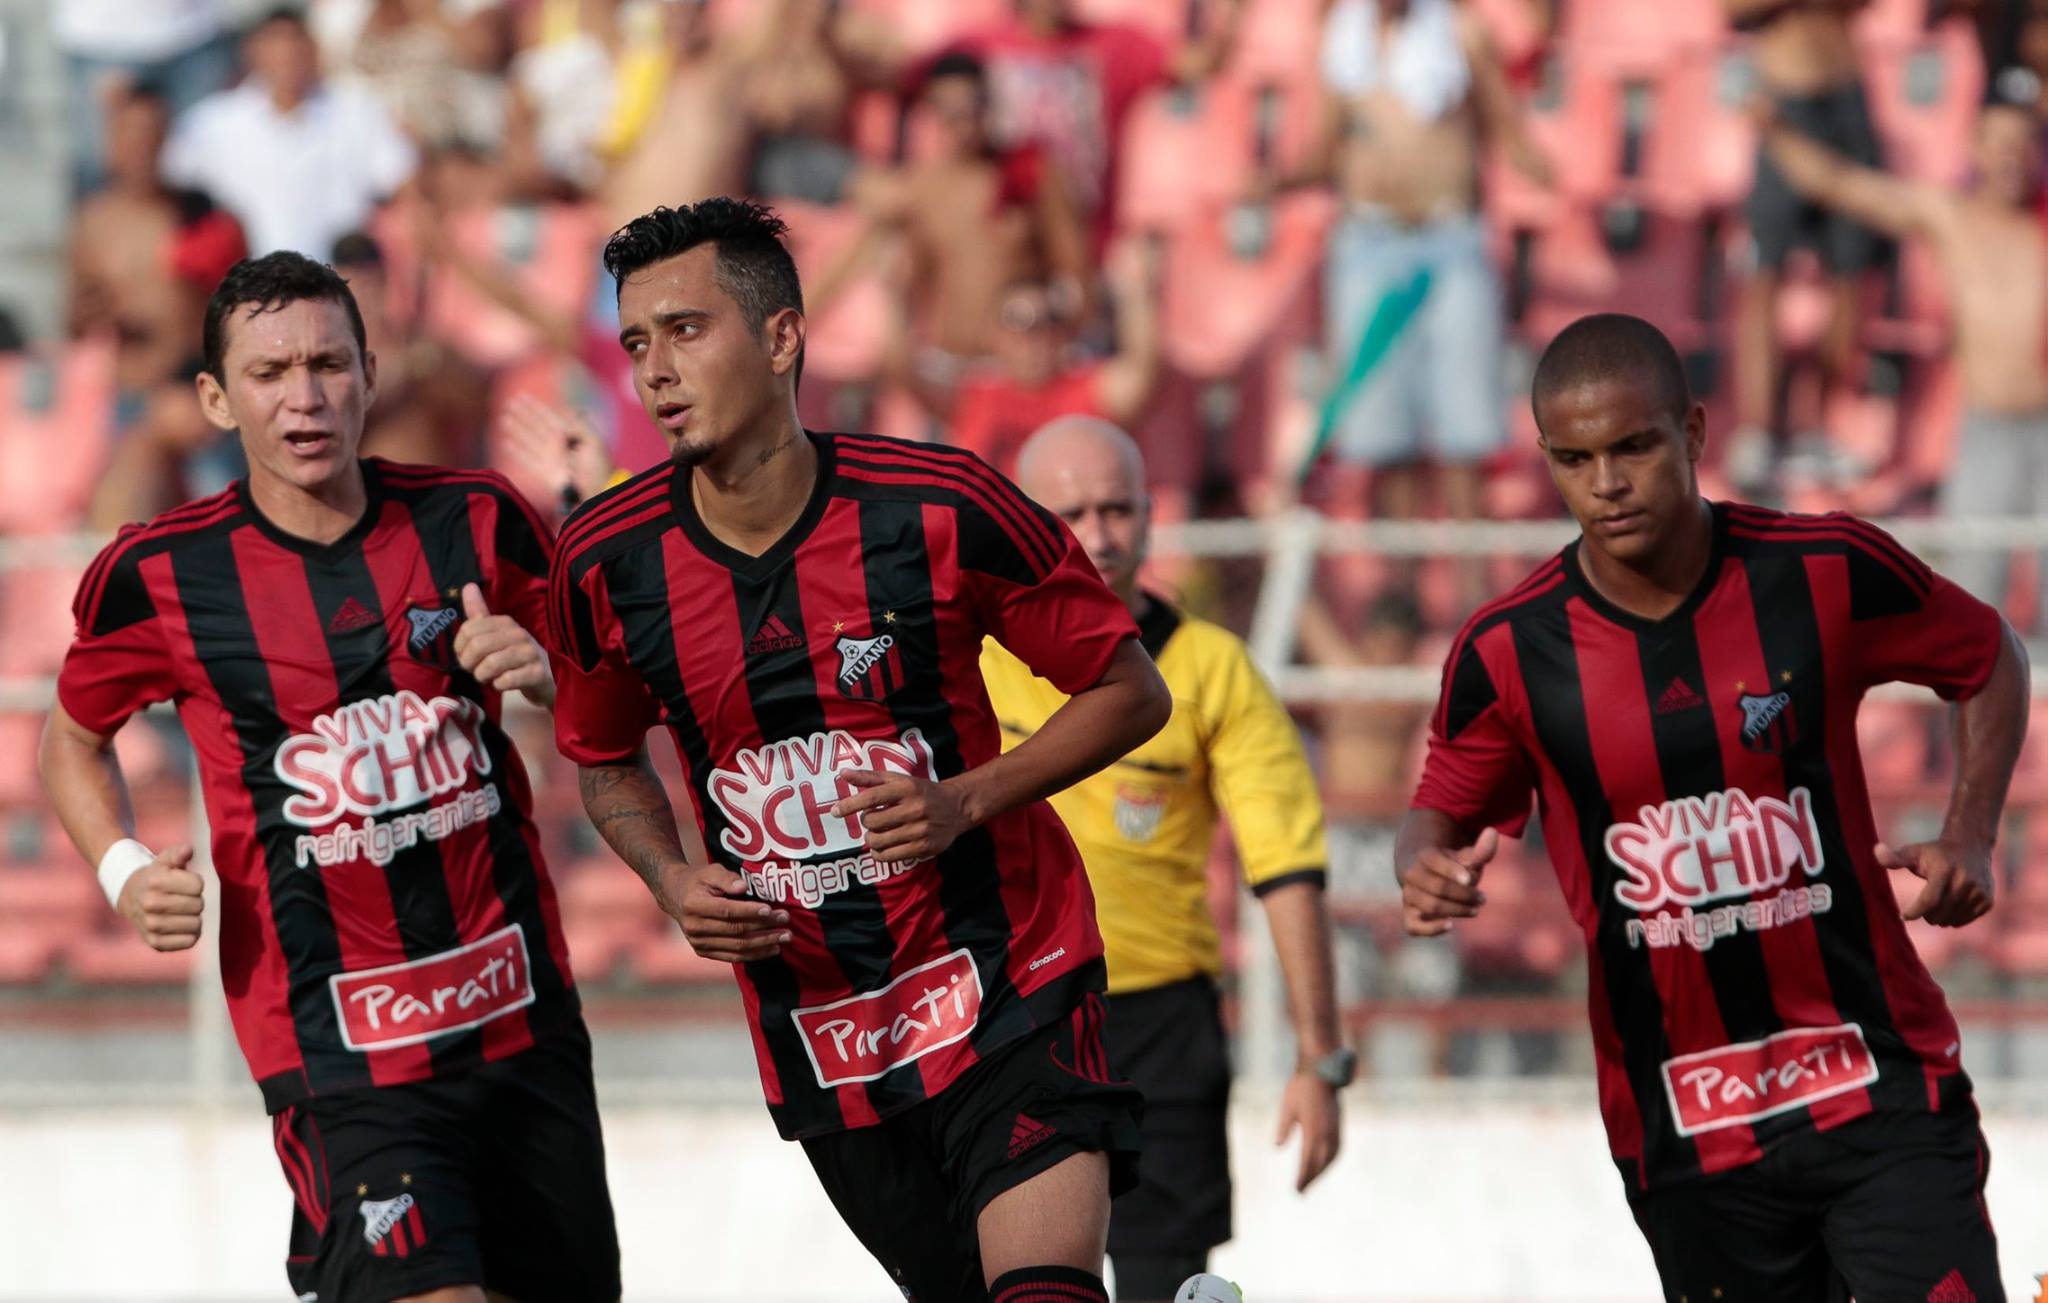 O Ituano é um dos poucos clubes do interior a vencer a competição em duas oportunidades. A primeira em 2002 e a mais recente em 2014, quando venceu o Santos nos pênaltis na final.